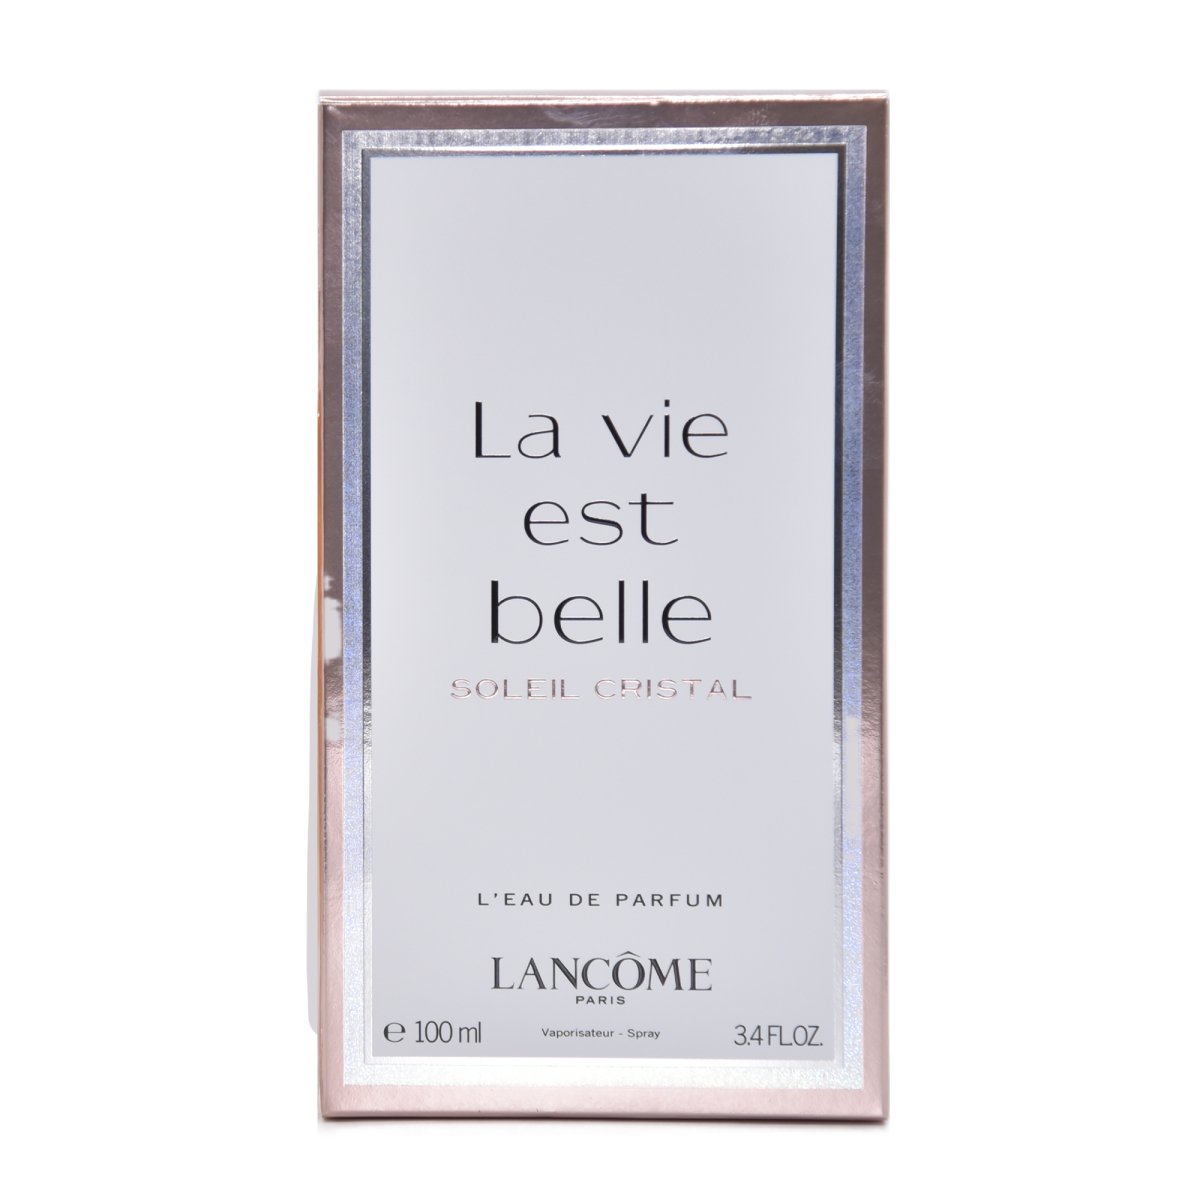 Lancome Ladies La Vie Est Belle Soleil Cristal EDP Spray 3.4 oz - Perfume Headquarters - Lancome - Fragrance